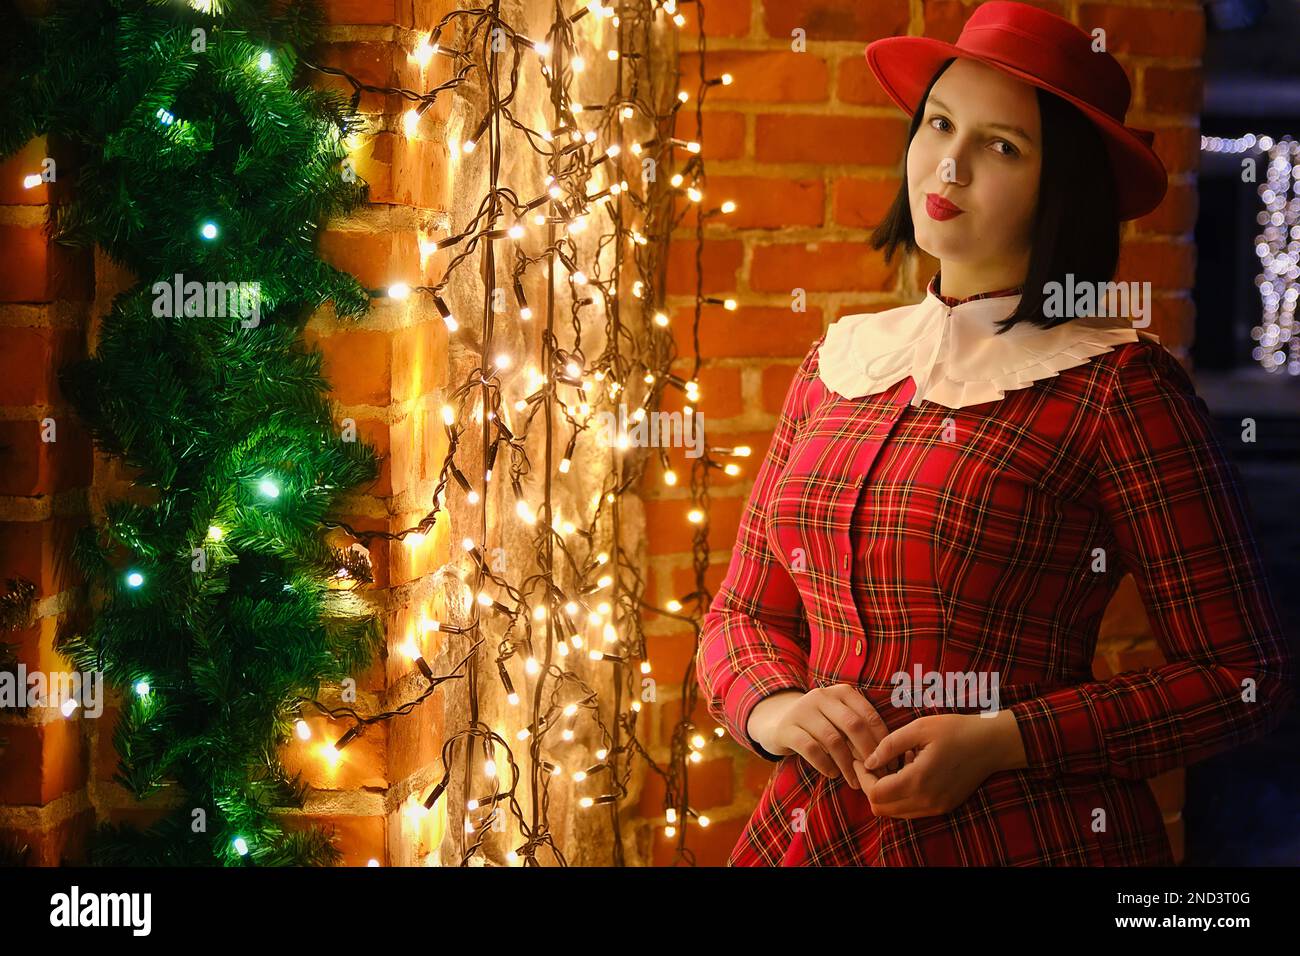 Neujahrsfeier, Feiertage, Weihnachten und Feierlichkeiten. Ein hübsches Mädchen in rotem Kleid, das draußen in der Nähe der Weihnachtsgirlande posiert Stockfoto